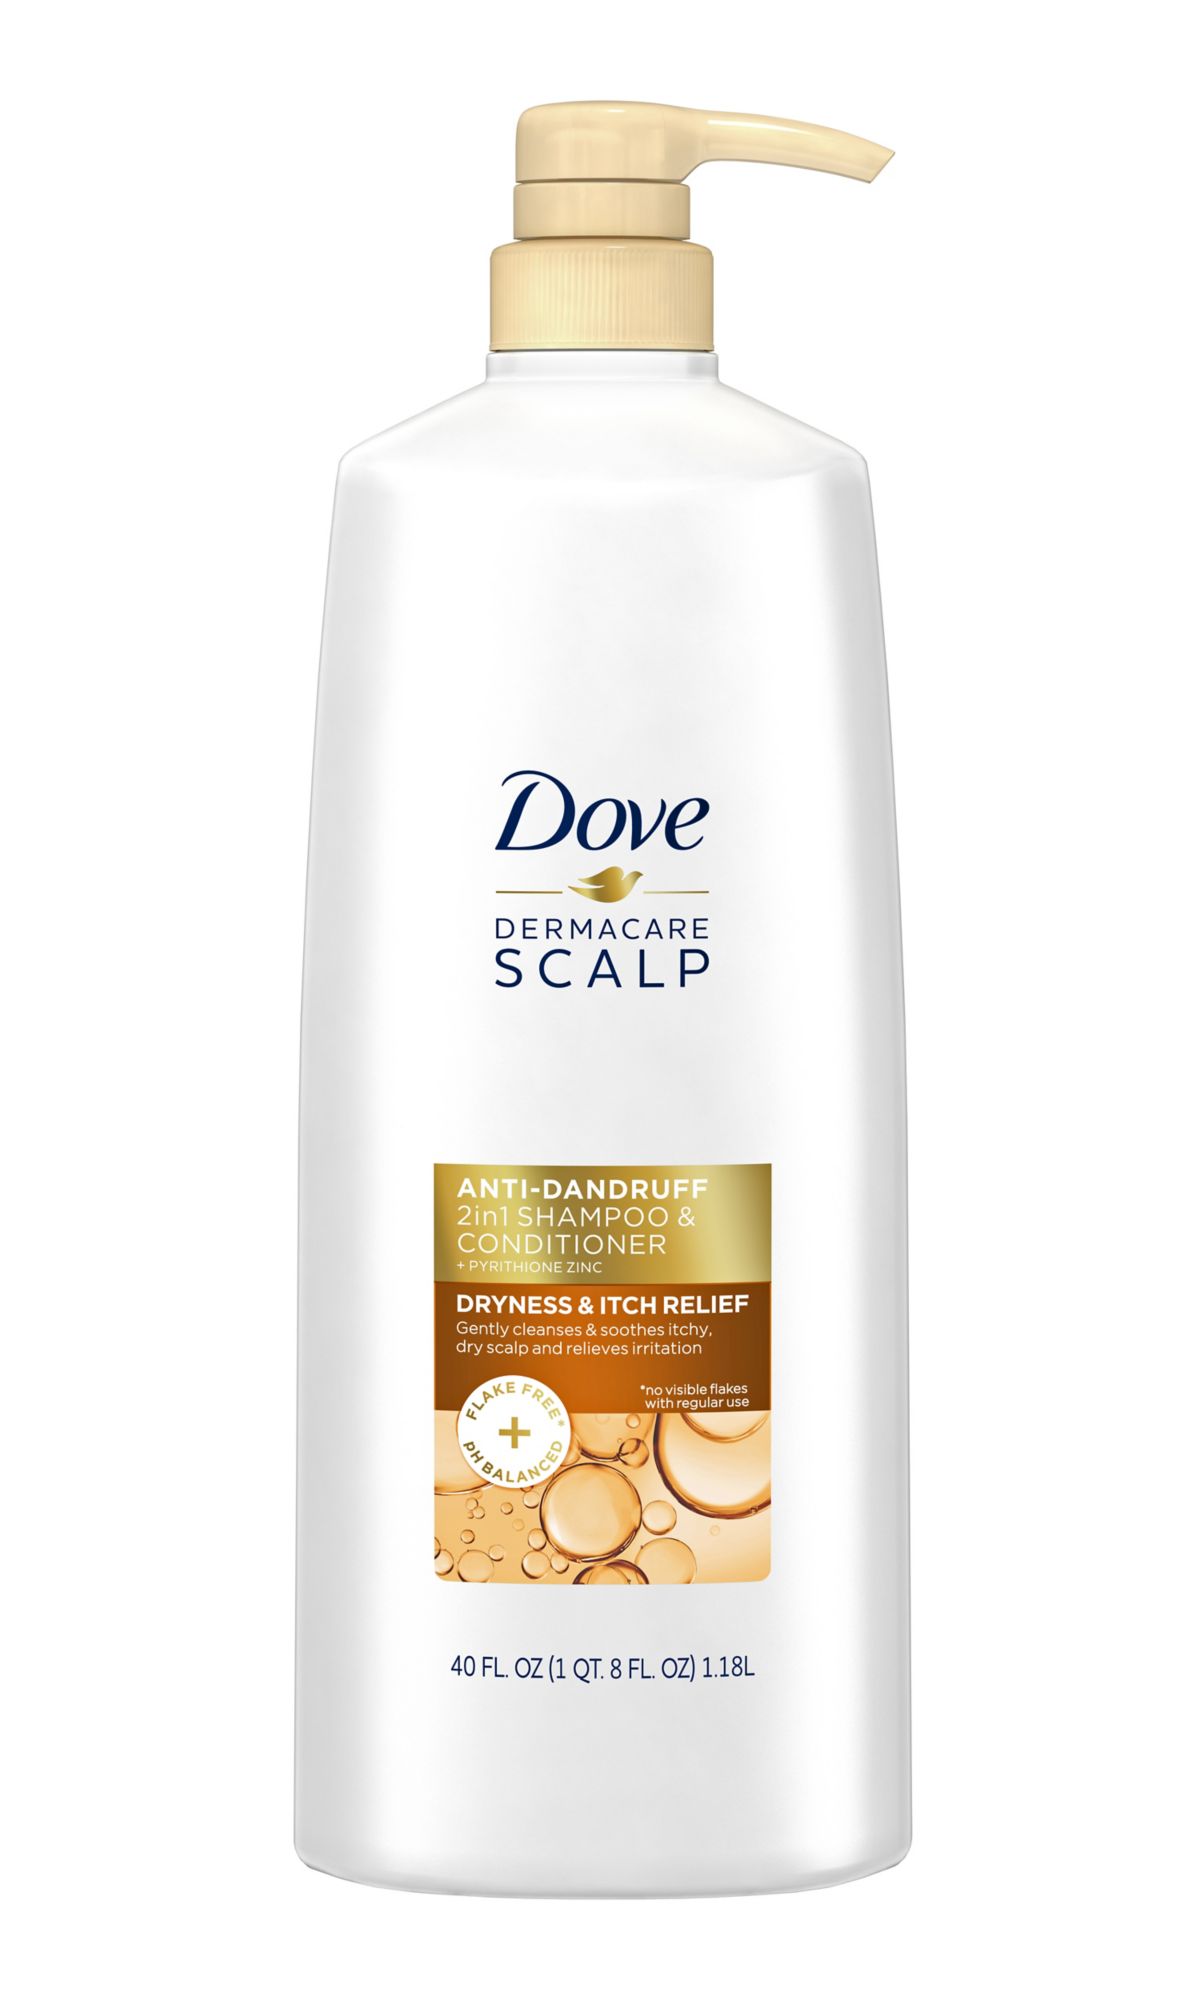 Dove Dermacare Scalp 2 In 1 Anti Dandruff Shampoo And Conditioner 40 Fl Oz